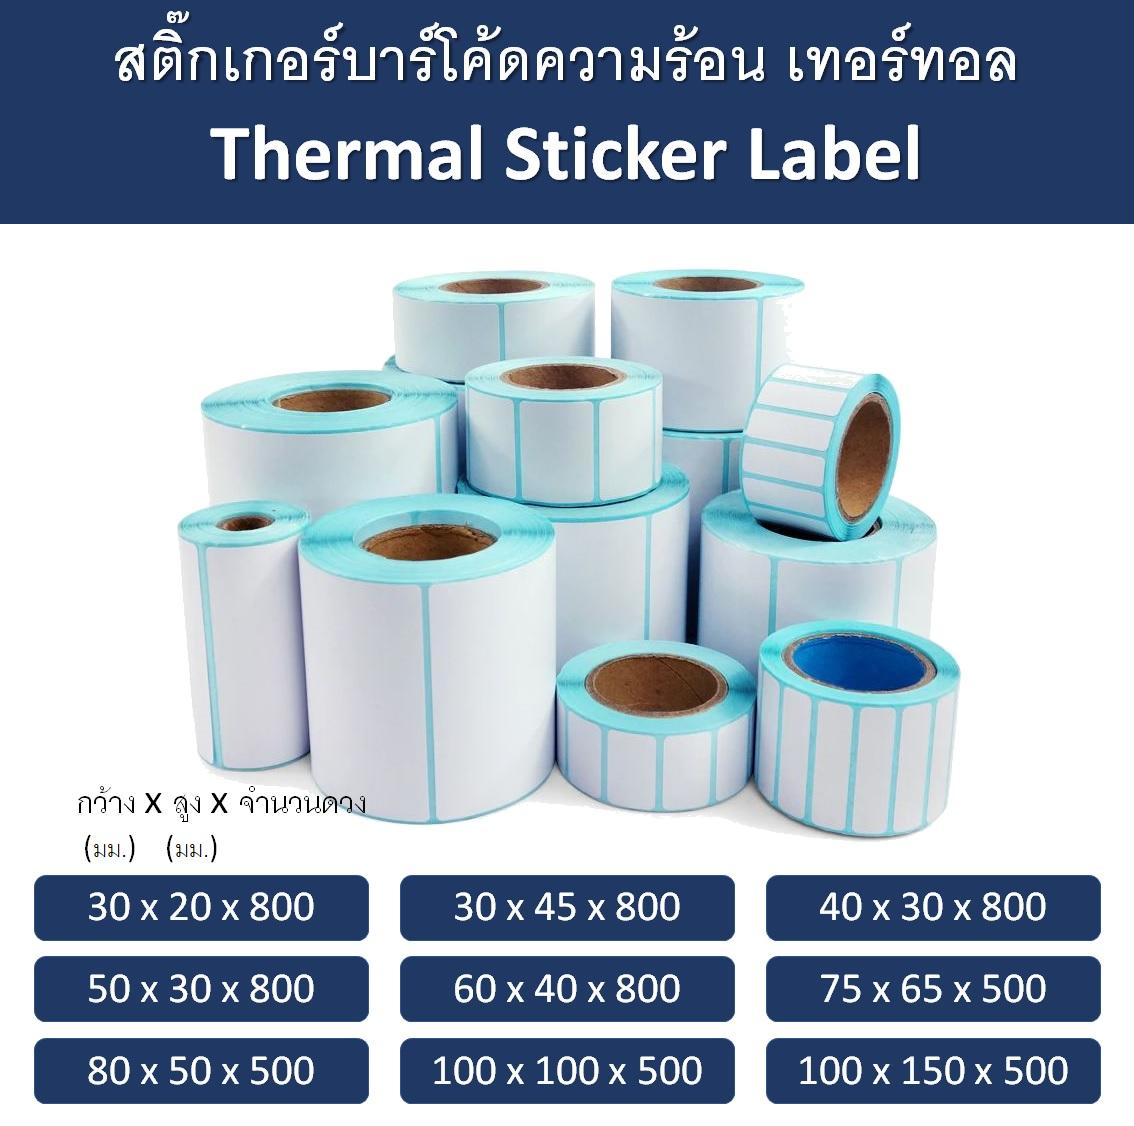 สติ๊กเกอร์บาร์โค้ดความร้อน เทอร์มอล Thermal Sticker Label